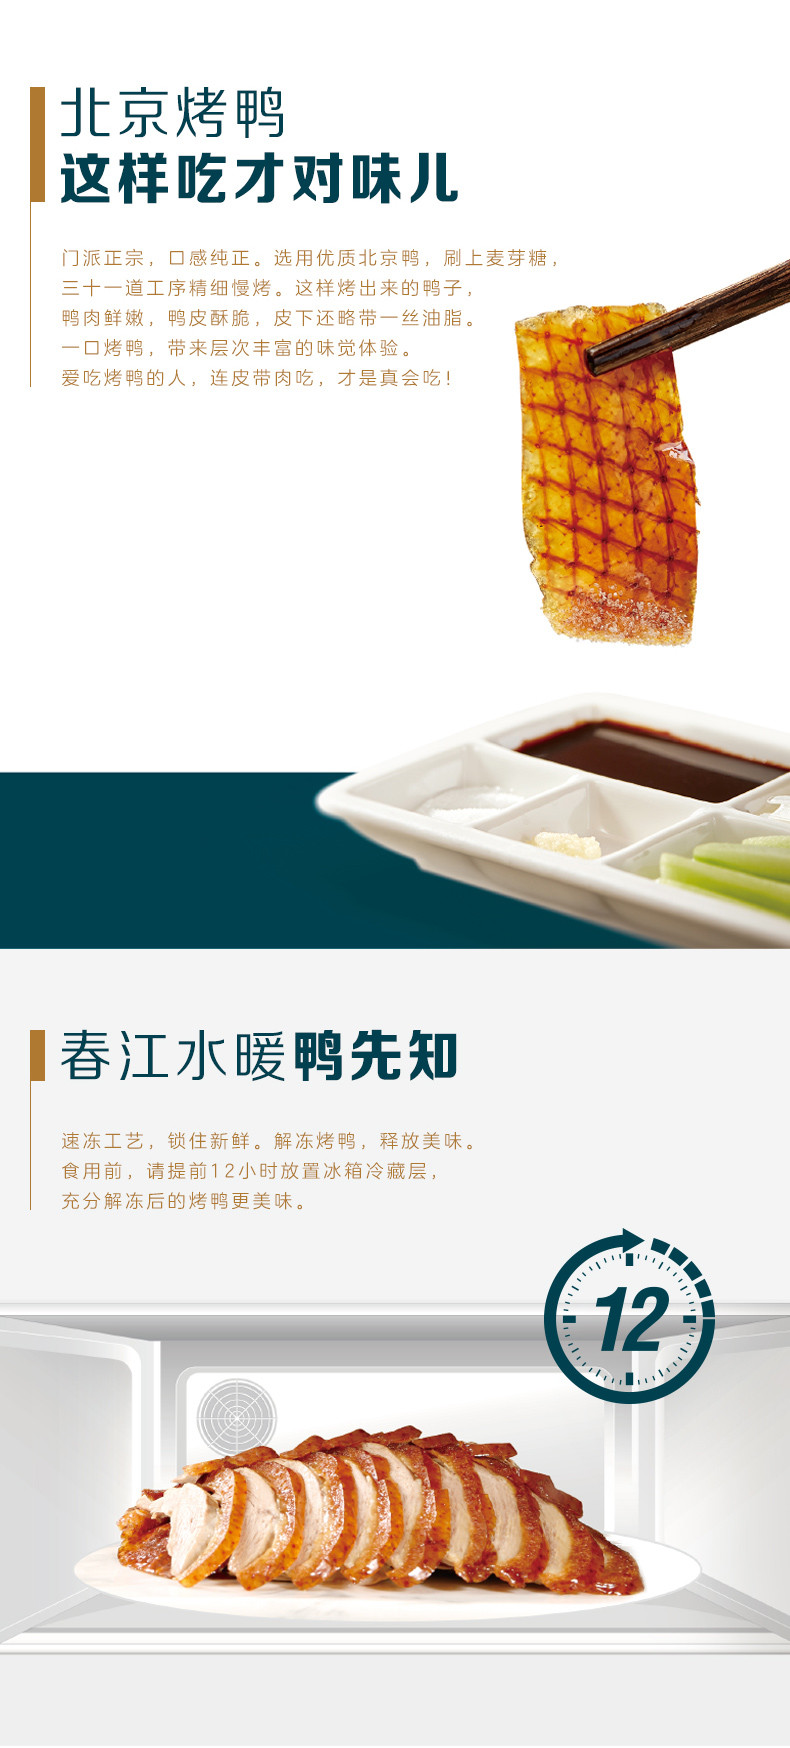 全聚德 北京烤鸭礼盒 特产中华熟食腊味鸭饼酱套装 分享装 660g